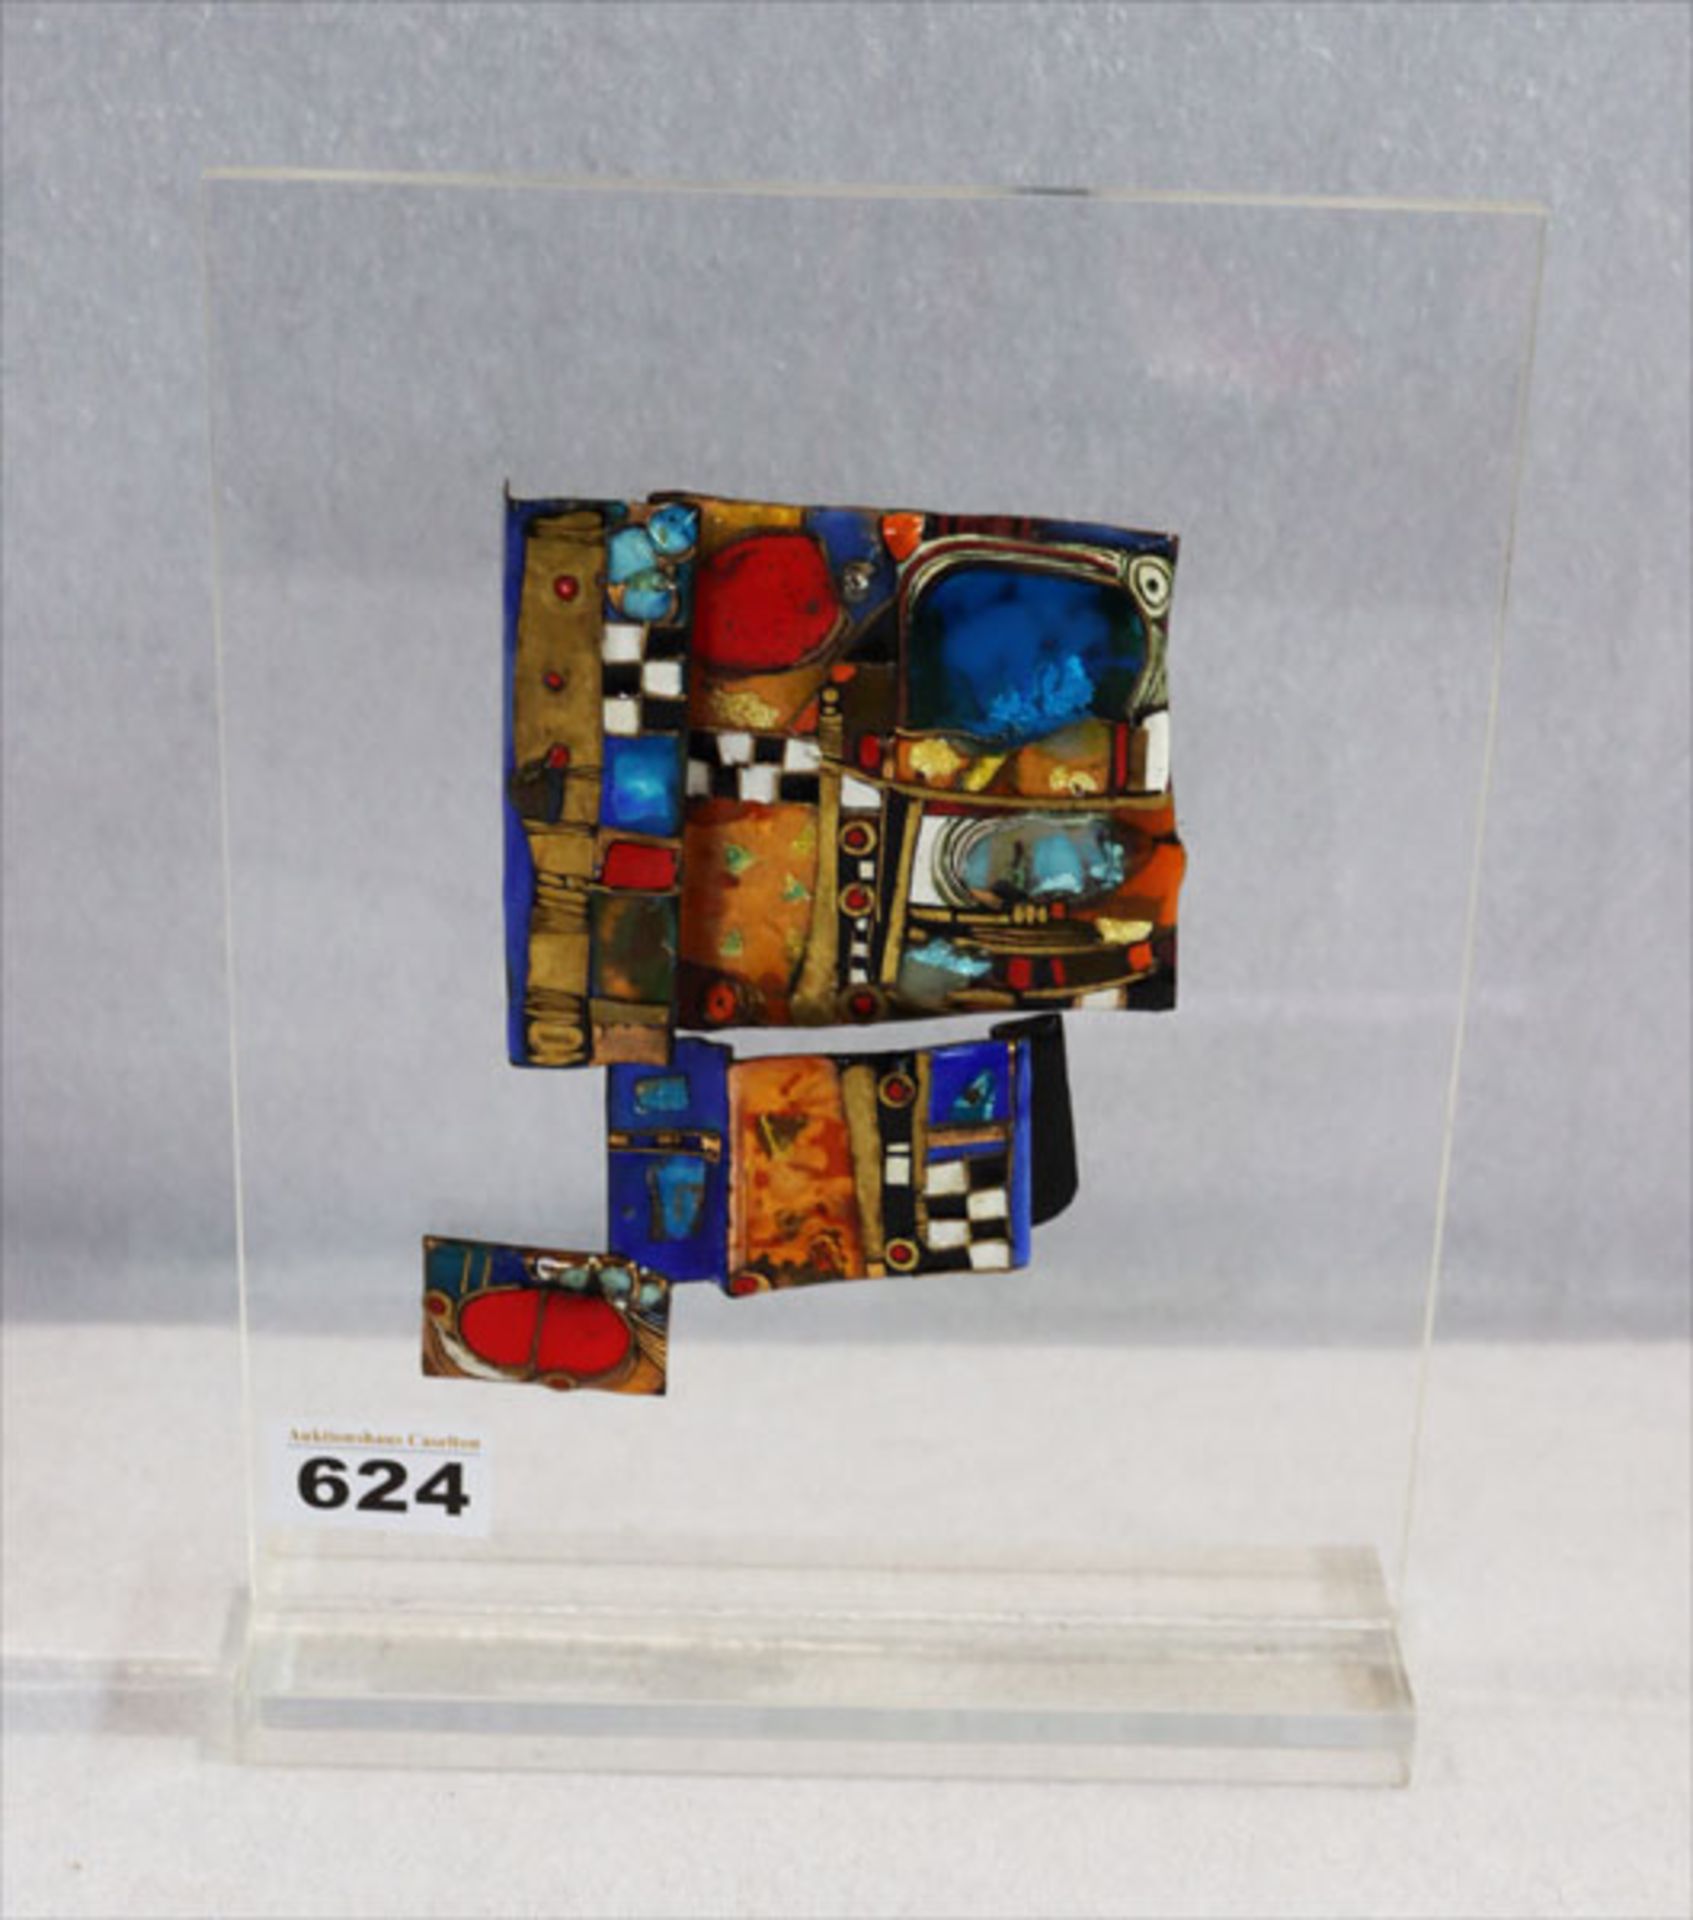 Kunstobjekt Emailarbeit auf Acrylständer, unbekannter Künstler/in, H 26,5 cm, B 20 cm